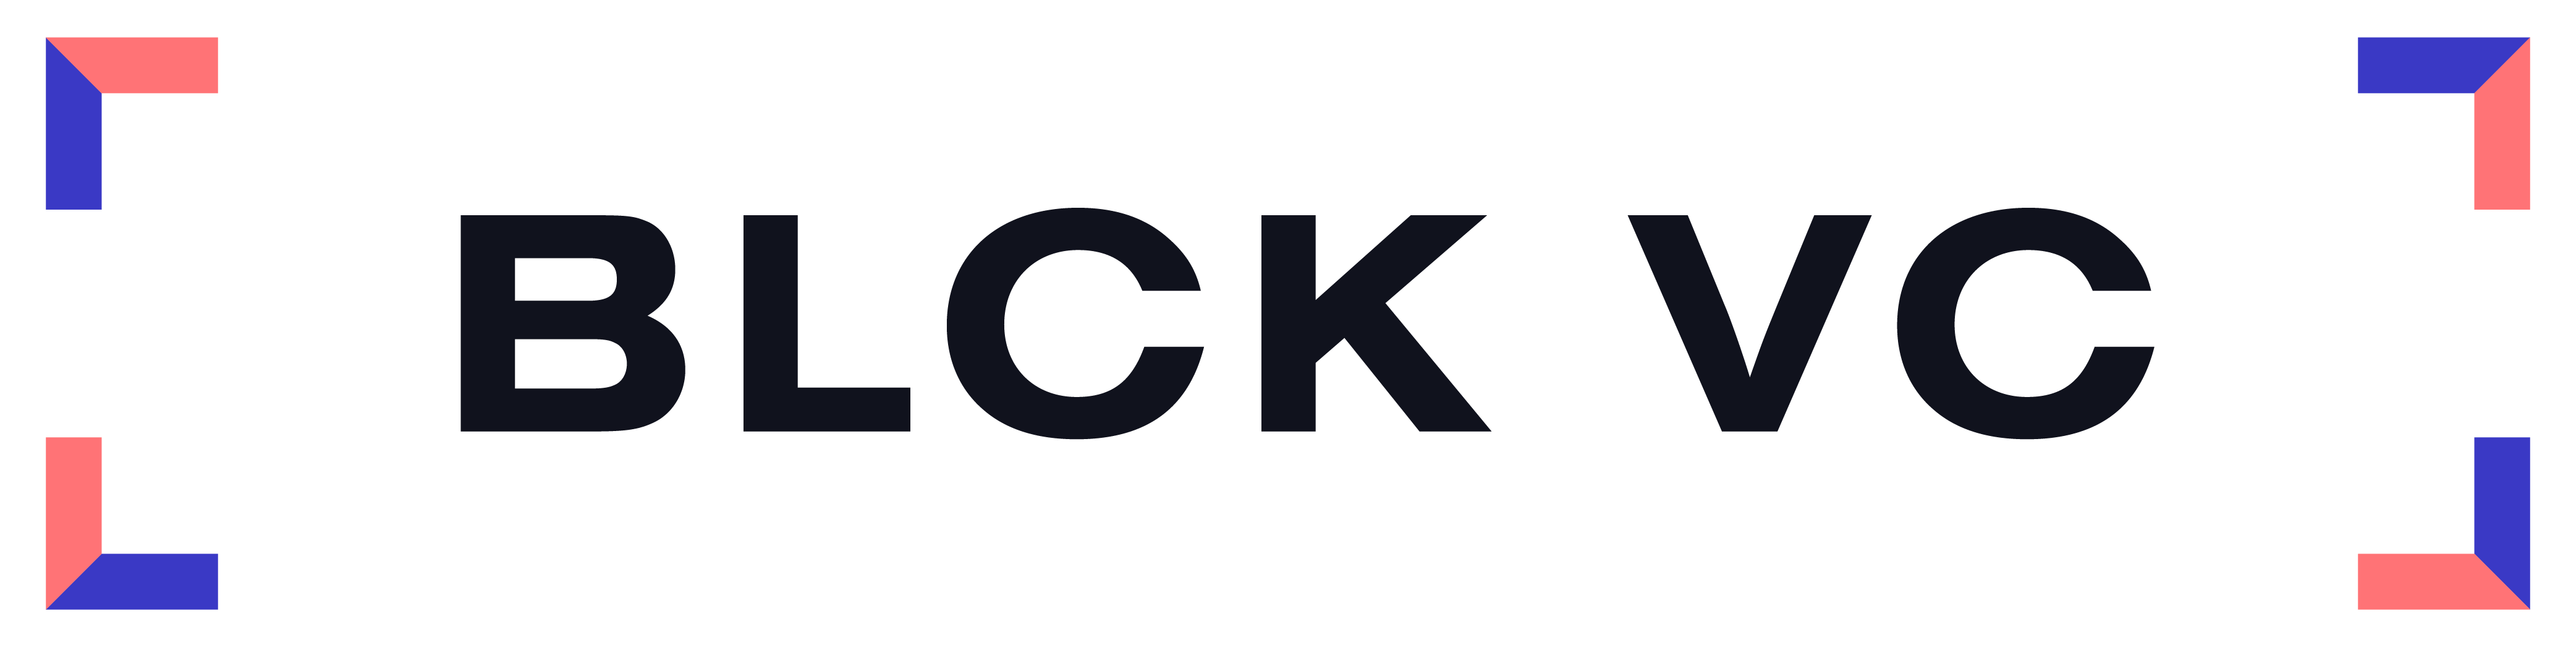 BLCK VC logo